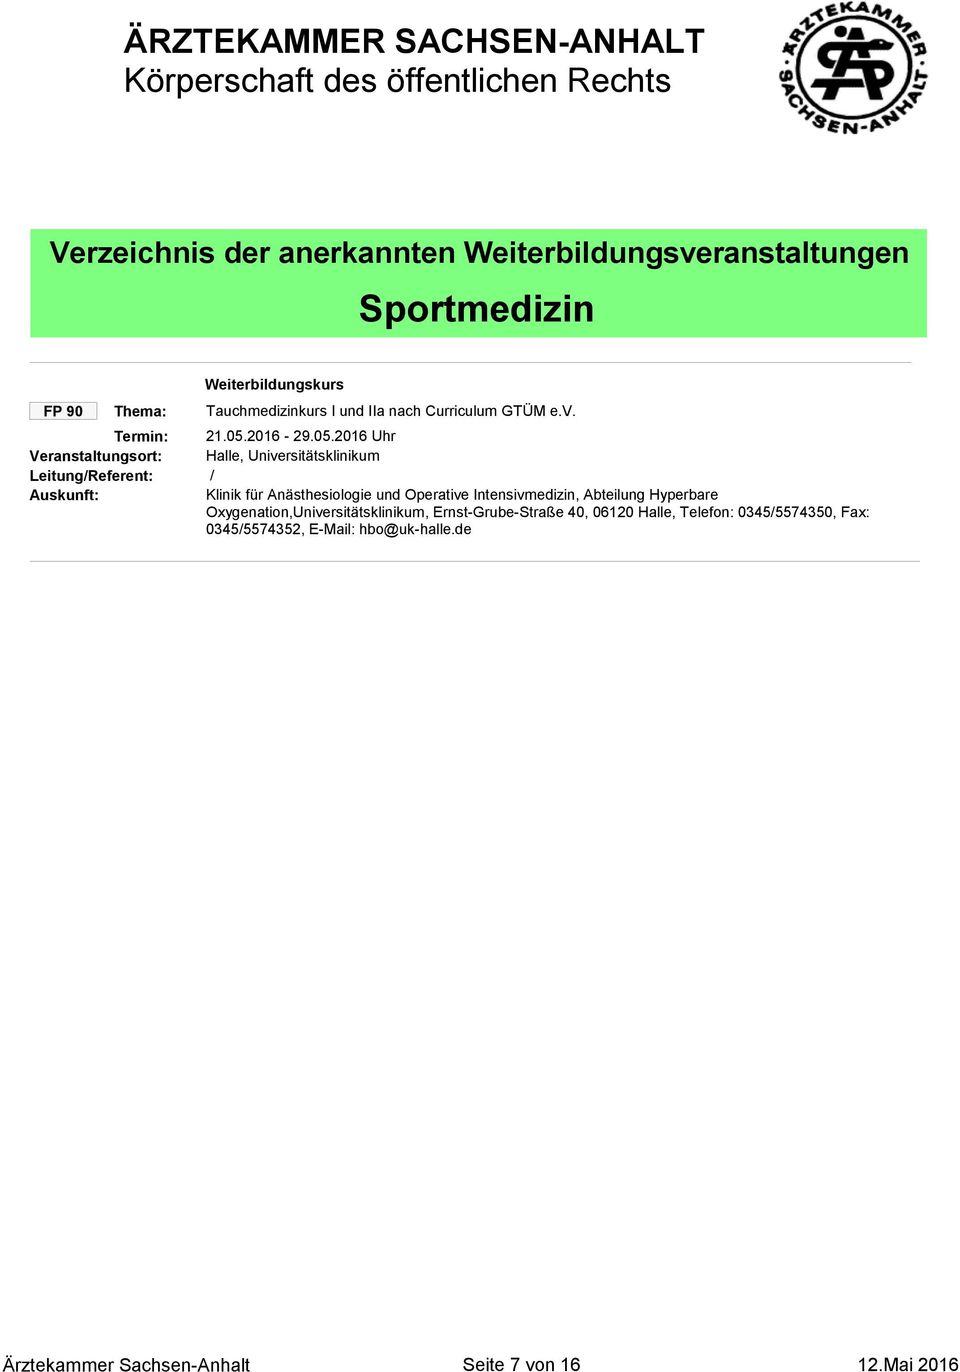 Abteilung Hyperbare Oxygenation,Universitätsklinikum, Ernst-Grube-Straße 40, 06120, Telefon: